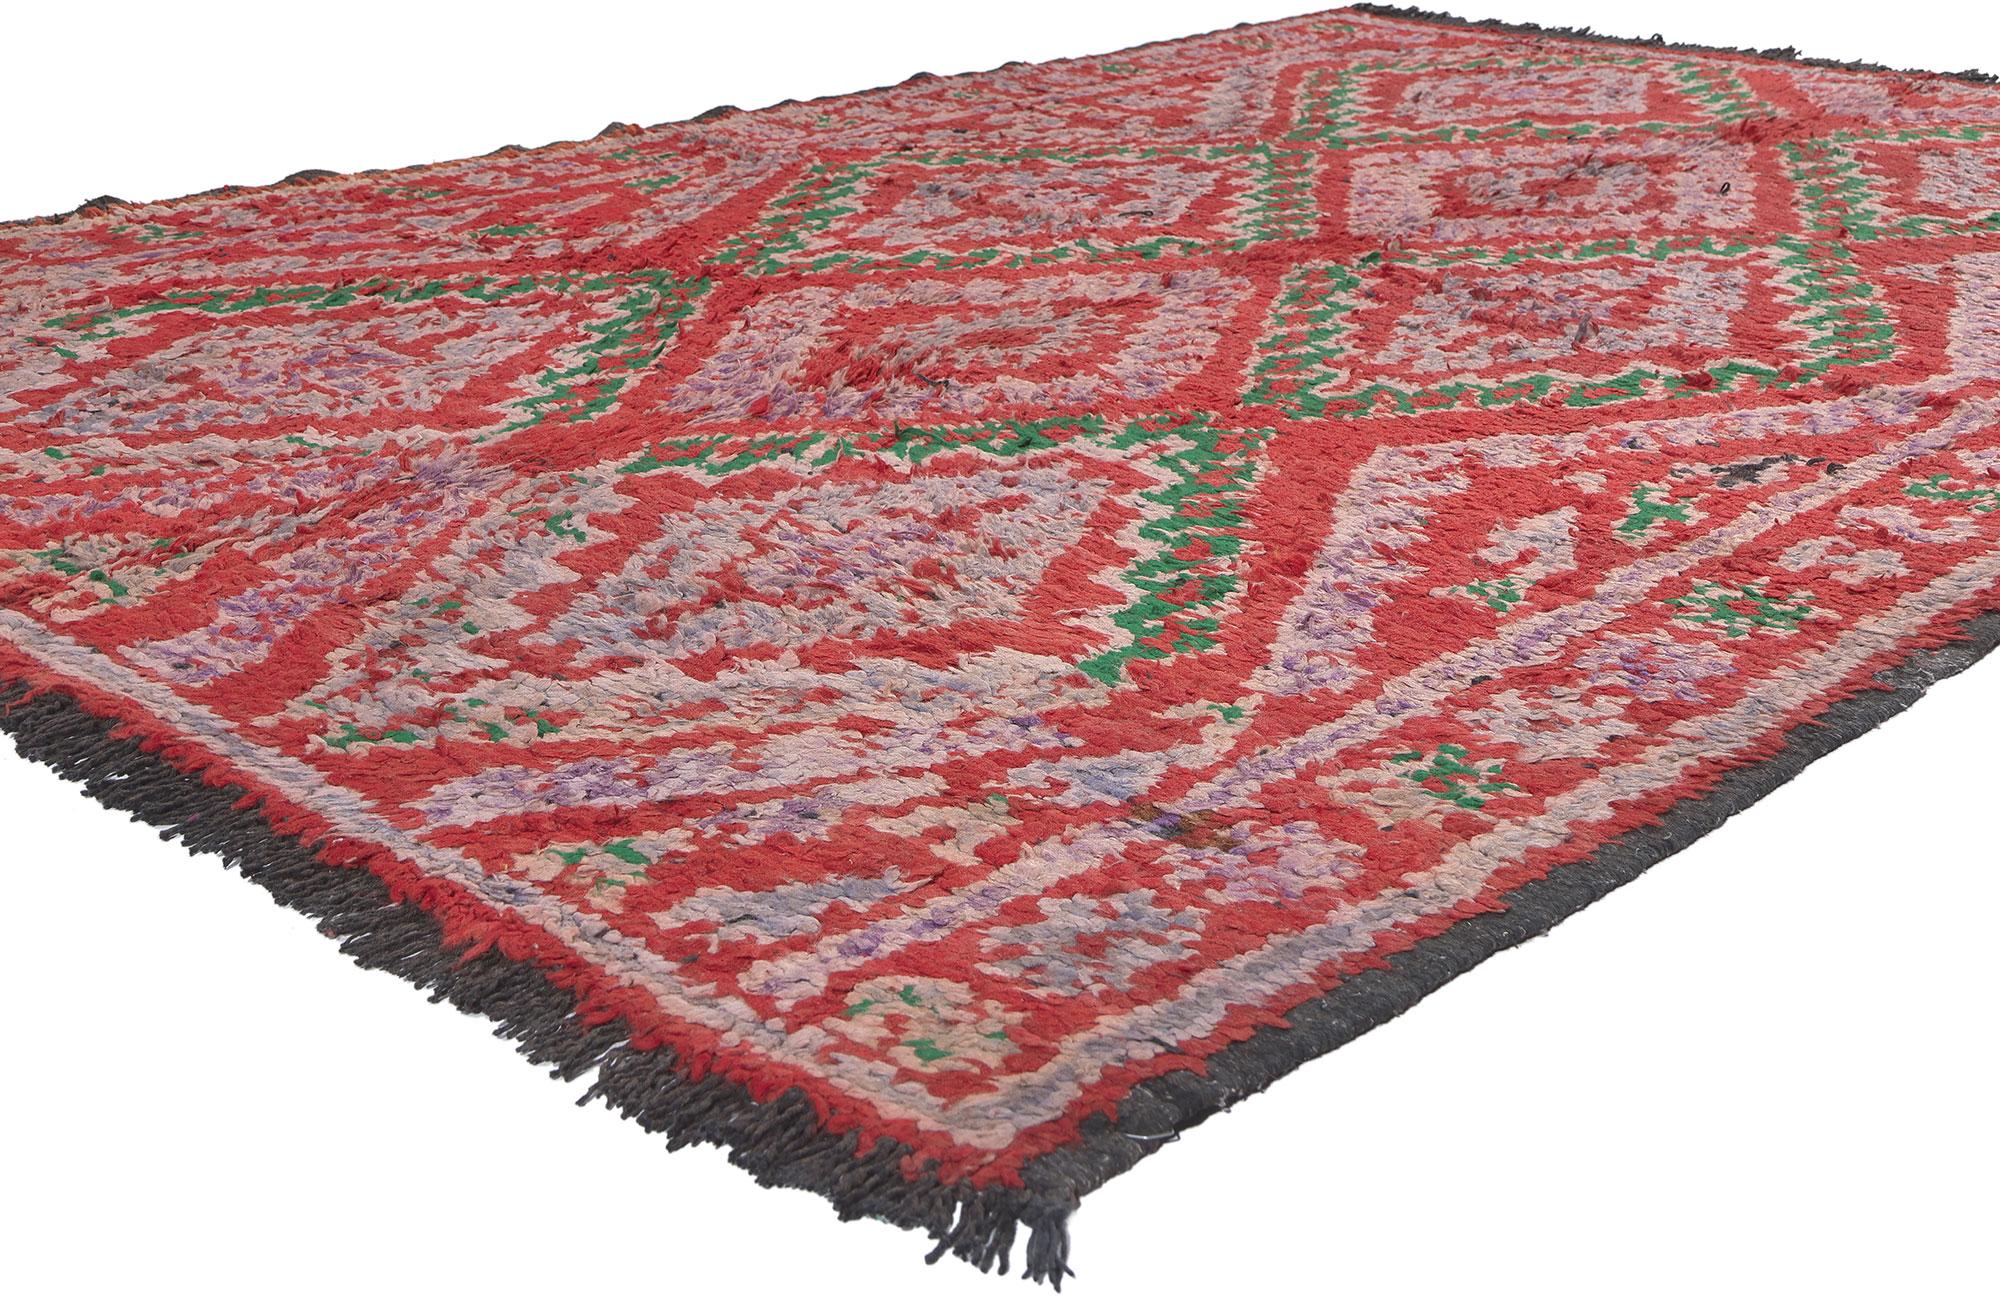 20208 Tapis marocain Vintage Red Talsint, 05'10 X 08'04. Ce tapis marocain vintage Talsint en laine nouée à la main n'est pas un simple revêtement de sol, c'est une symphonie de symboles et de significations tissés en un chef-d'œuvre captivant.